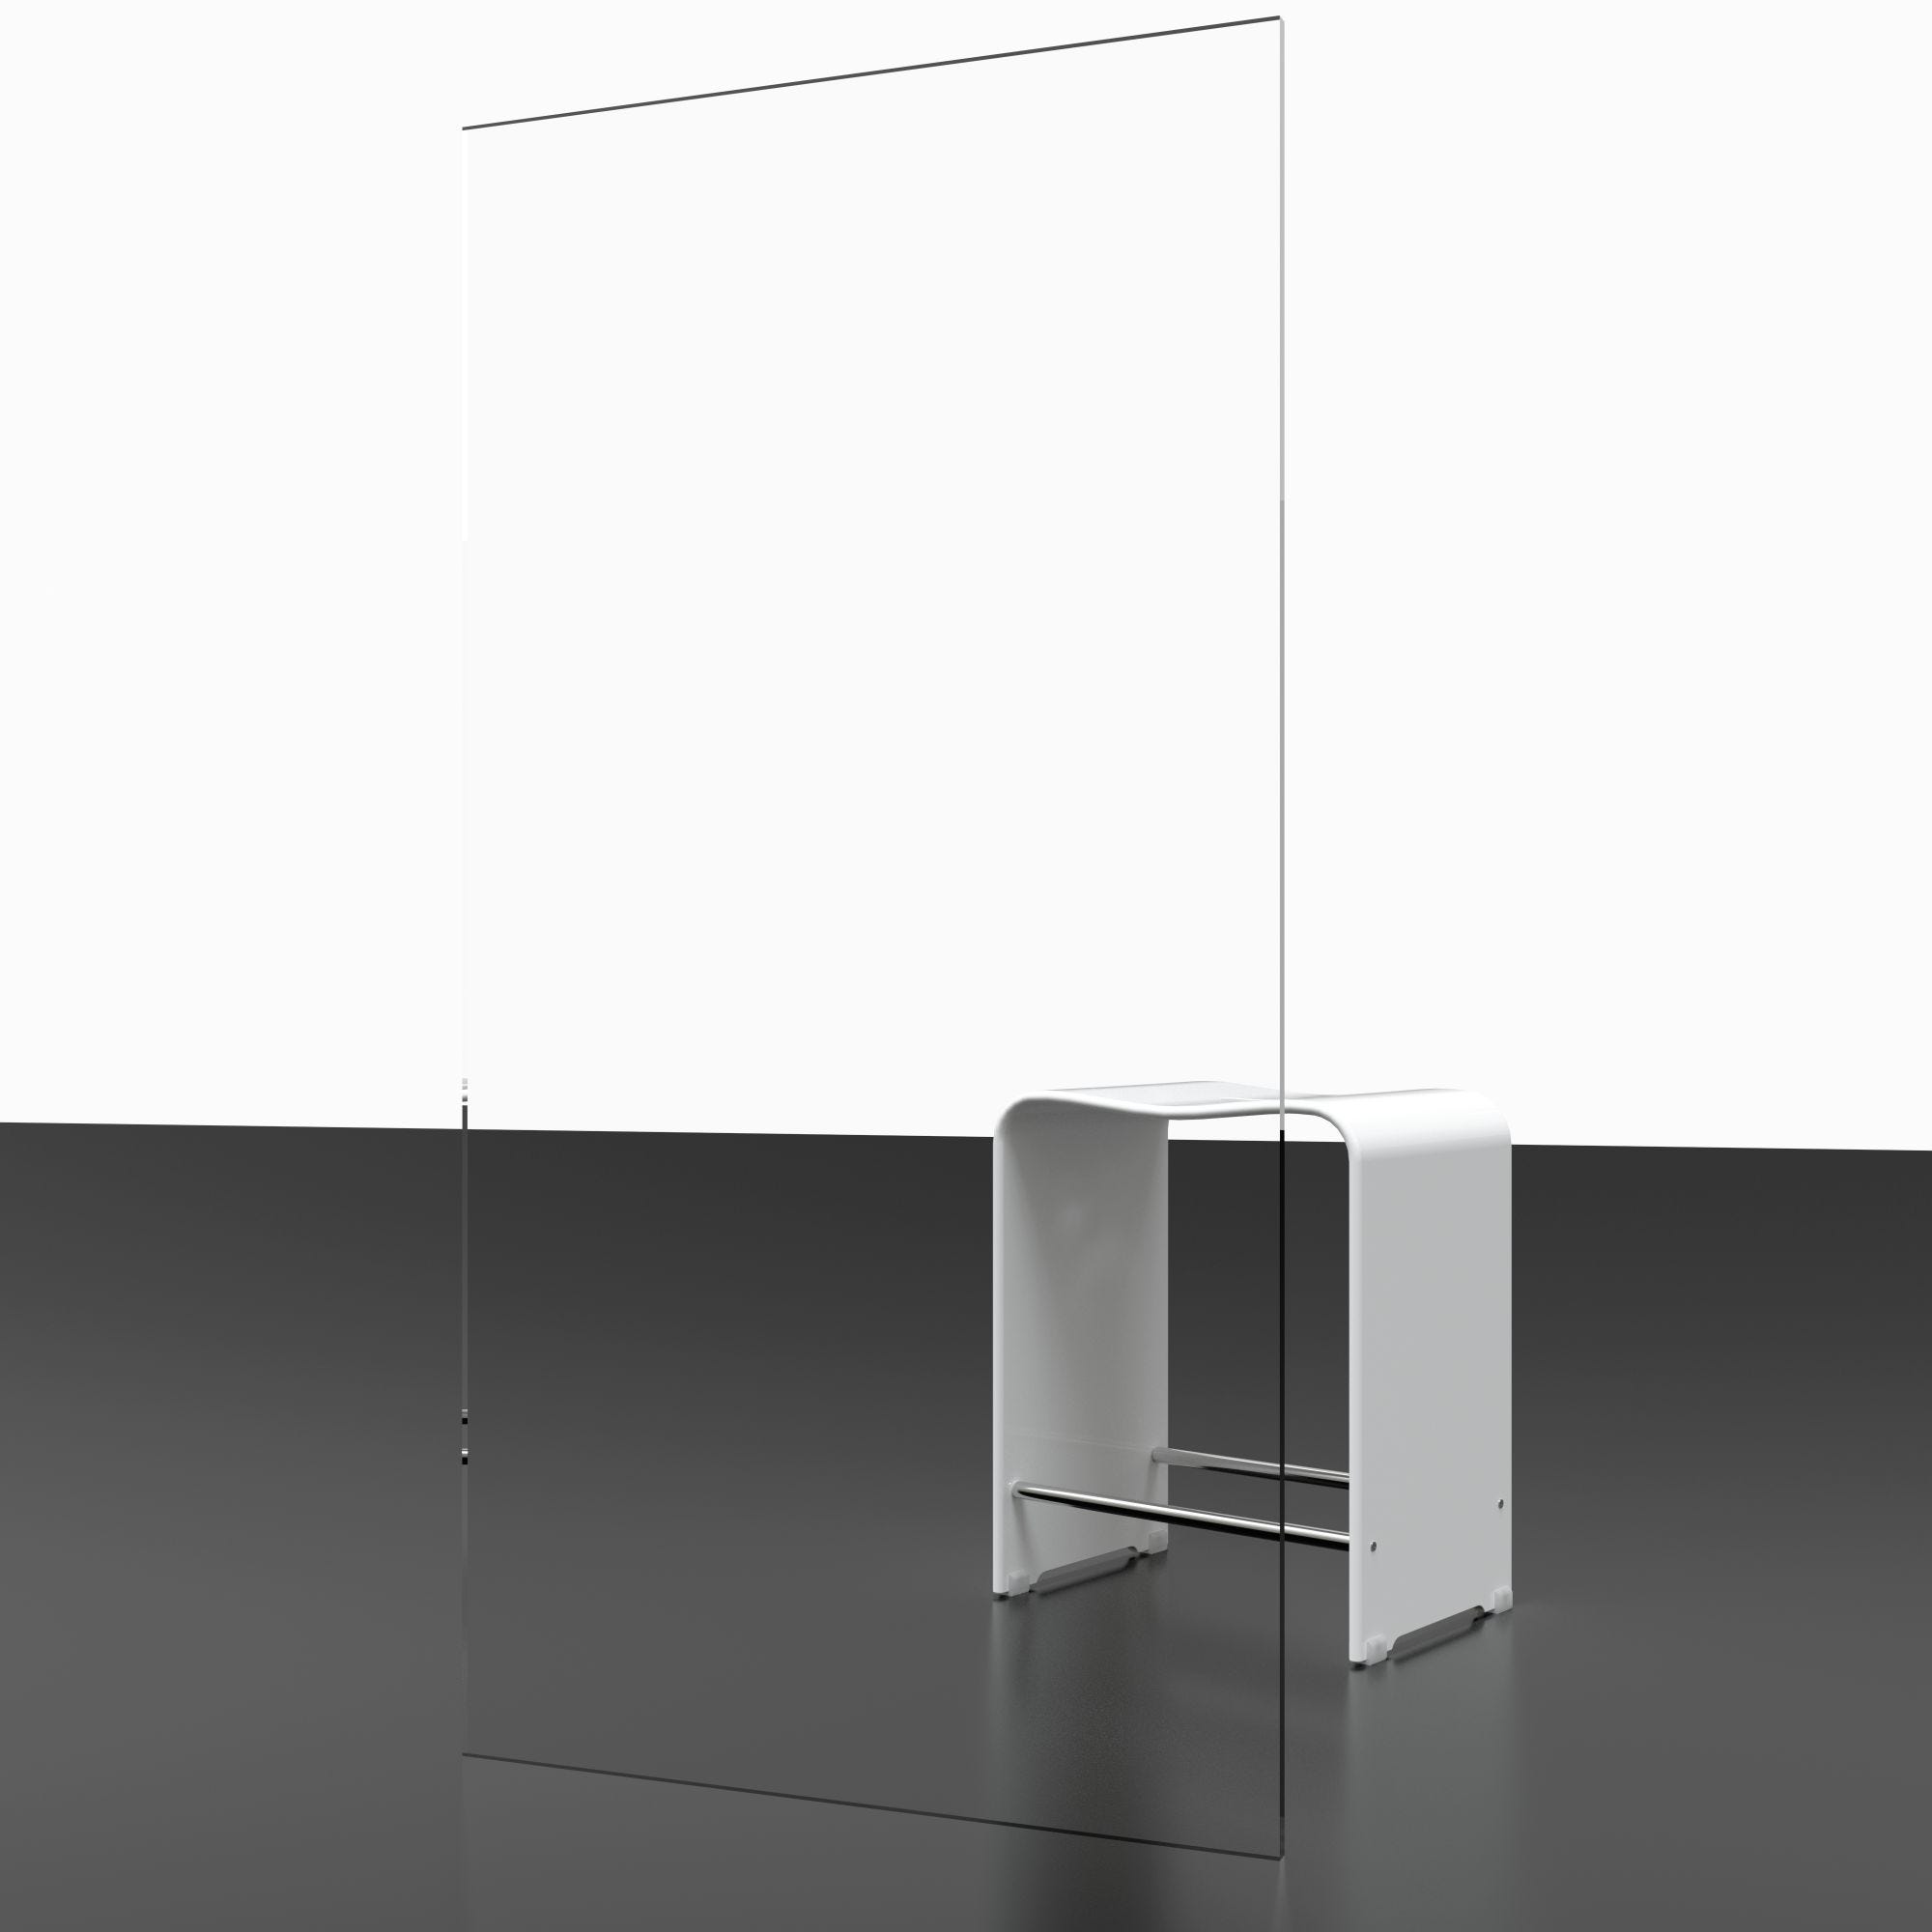 Schulte pare-baignoire rabattable, 70 x 150 cm, verre transparent 5 mm, écran paroi de baignoire mobile 1 volet pivotant, profilé alu nature 4